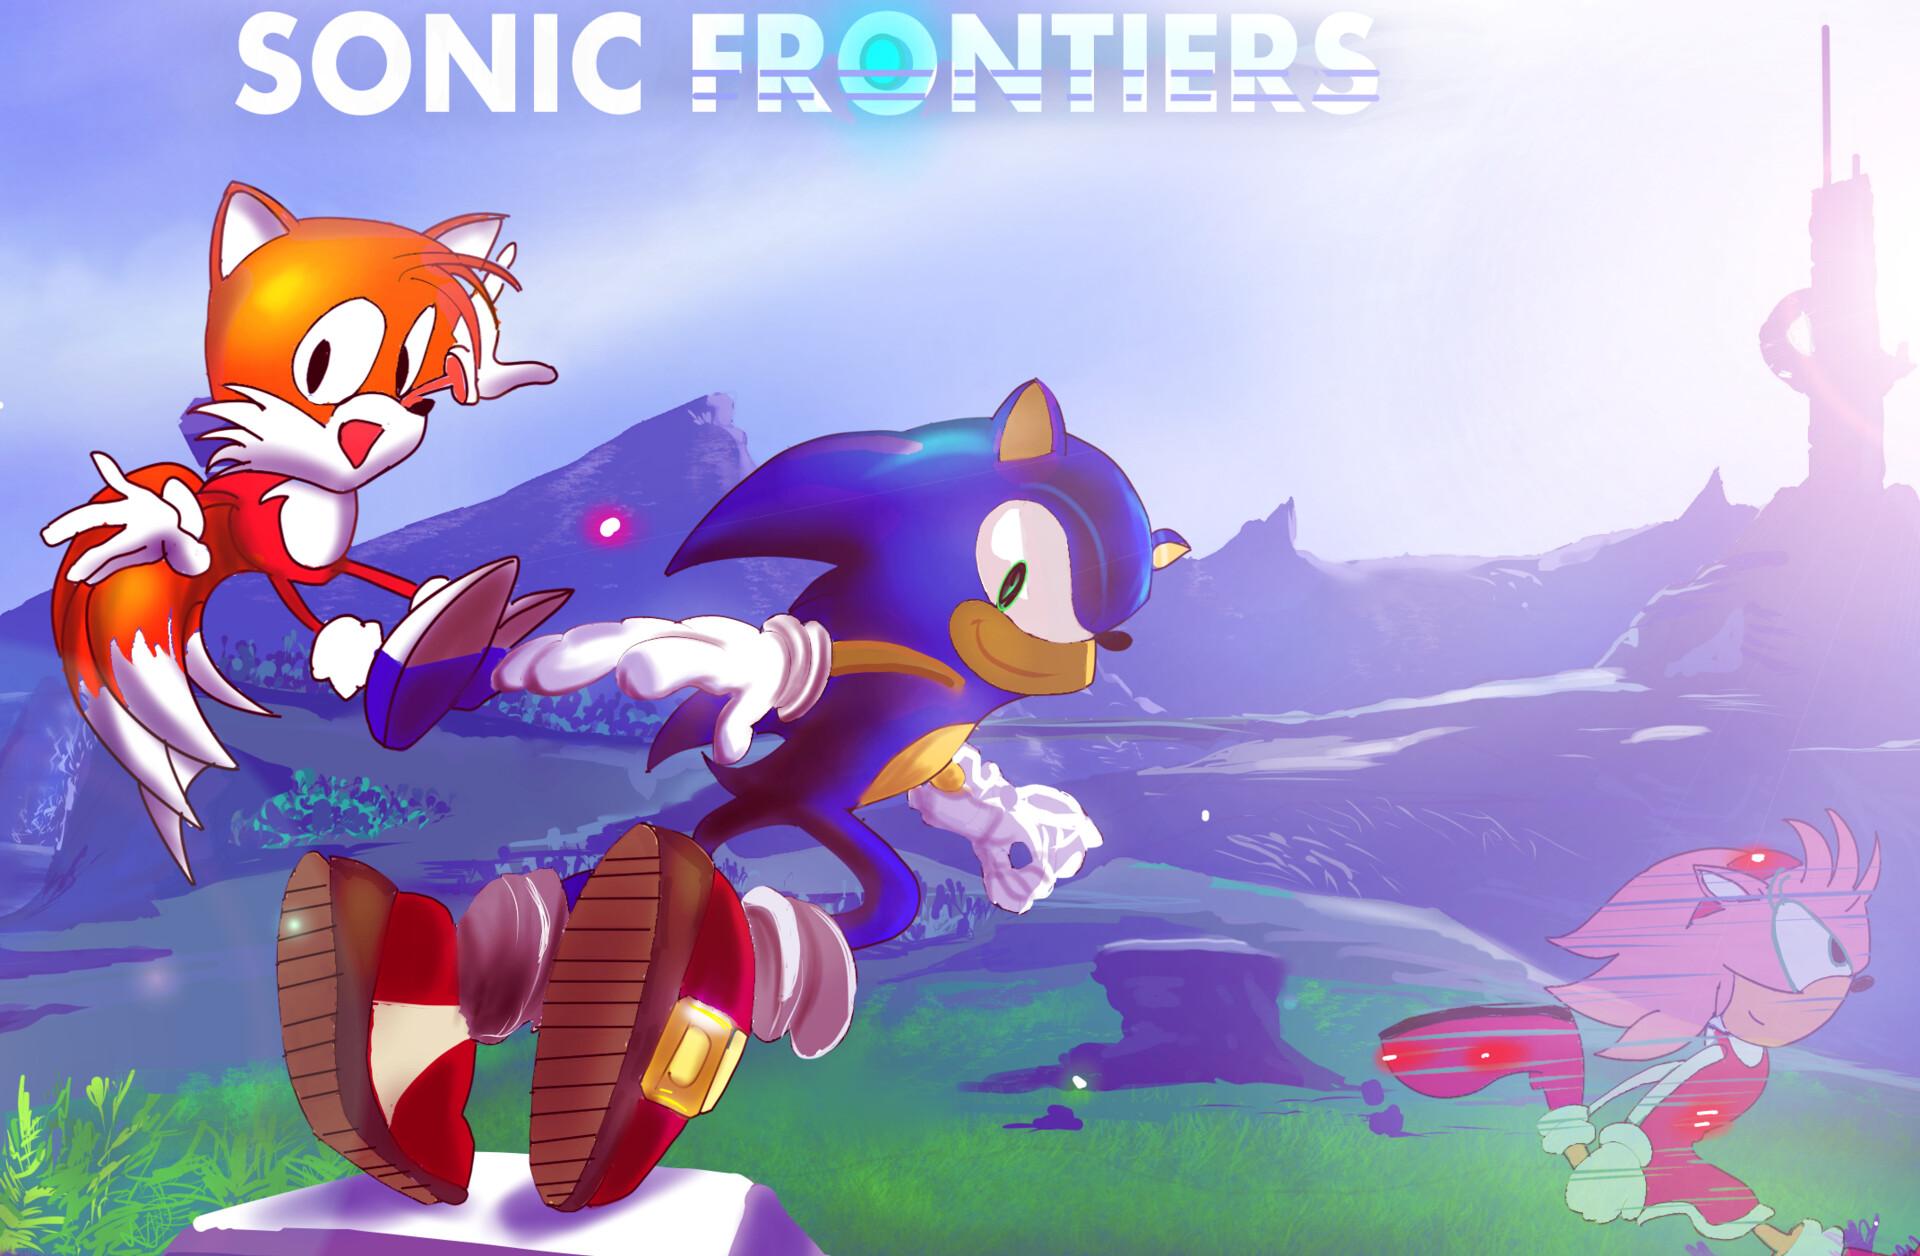 ArtStation - Sonic Frontiers